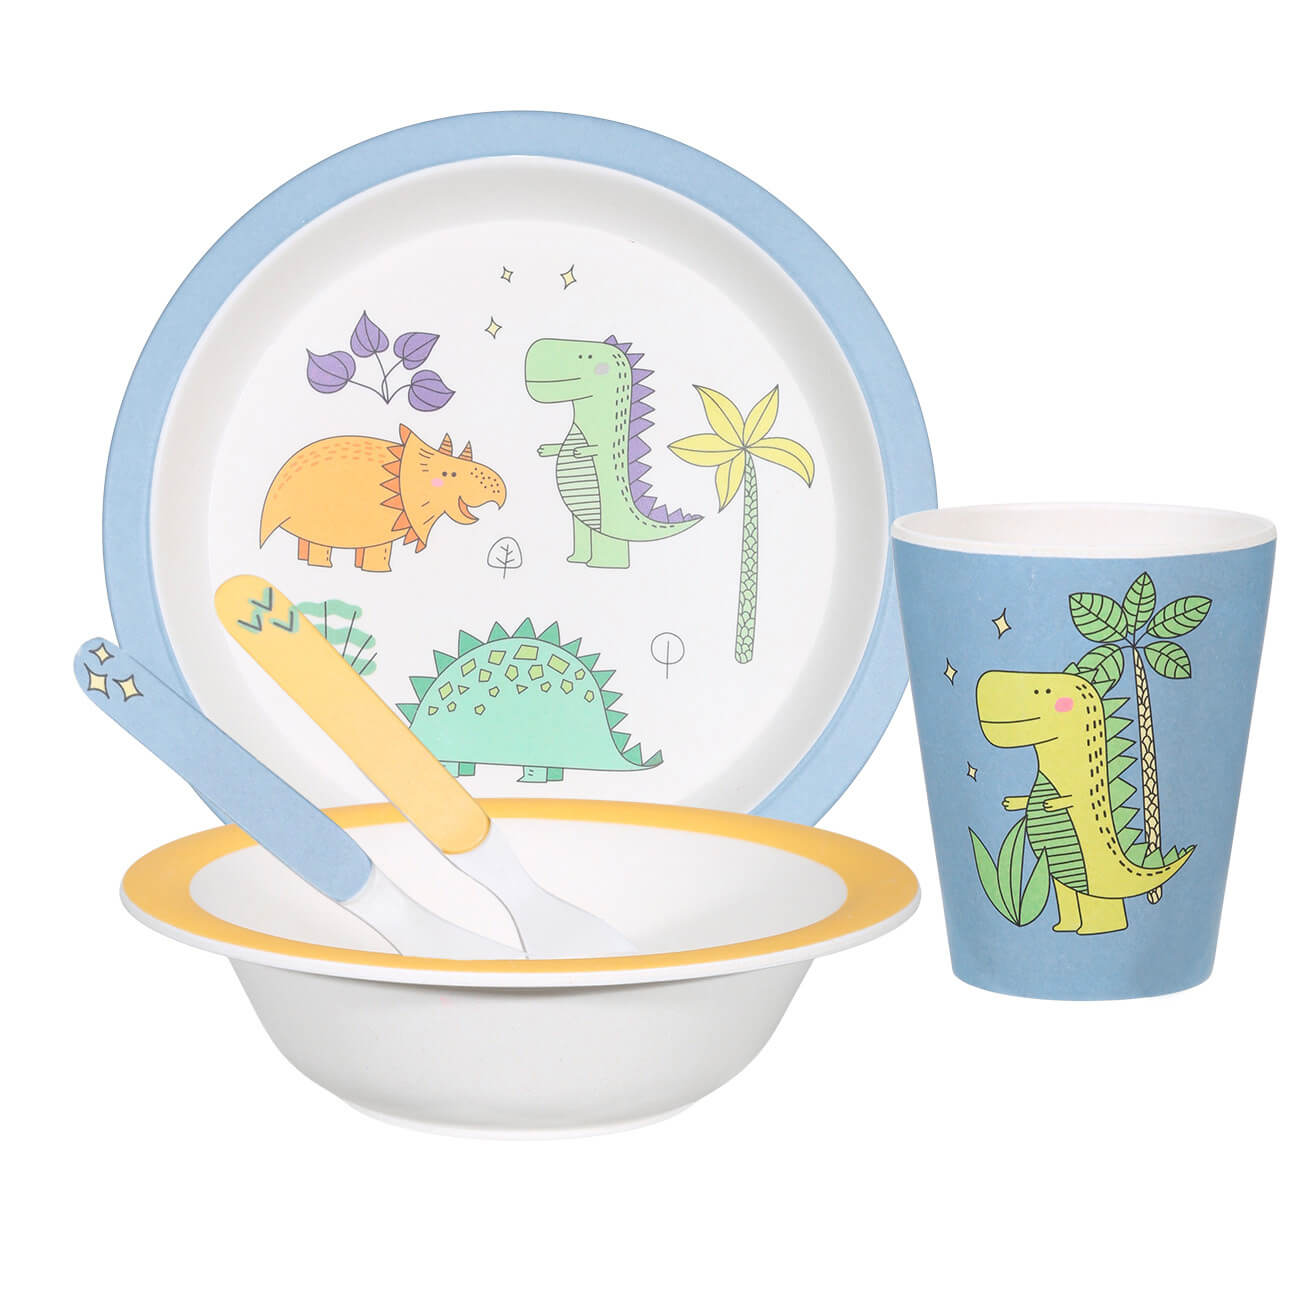 Набор посуды, детский, 5 пр, бамбук, желто-голубой, Динозавр, Dino динозавр робот радиоуправляемый